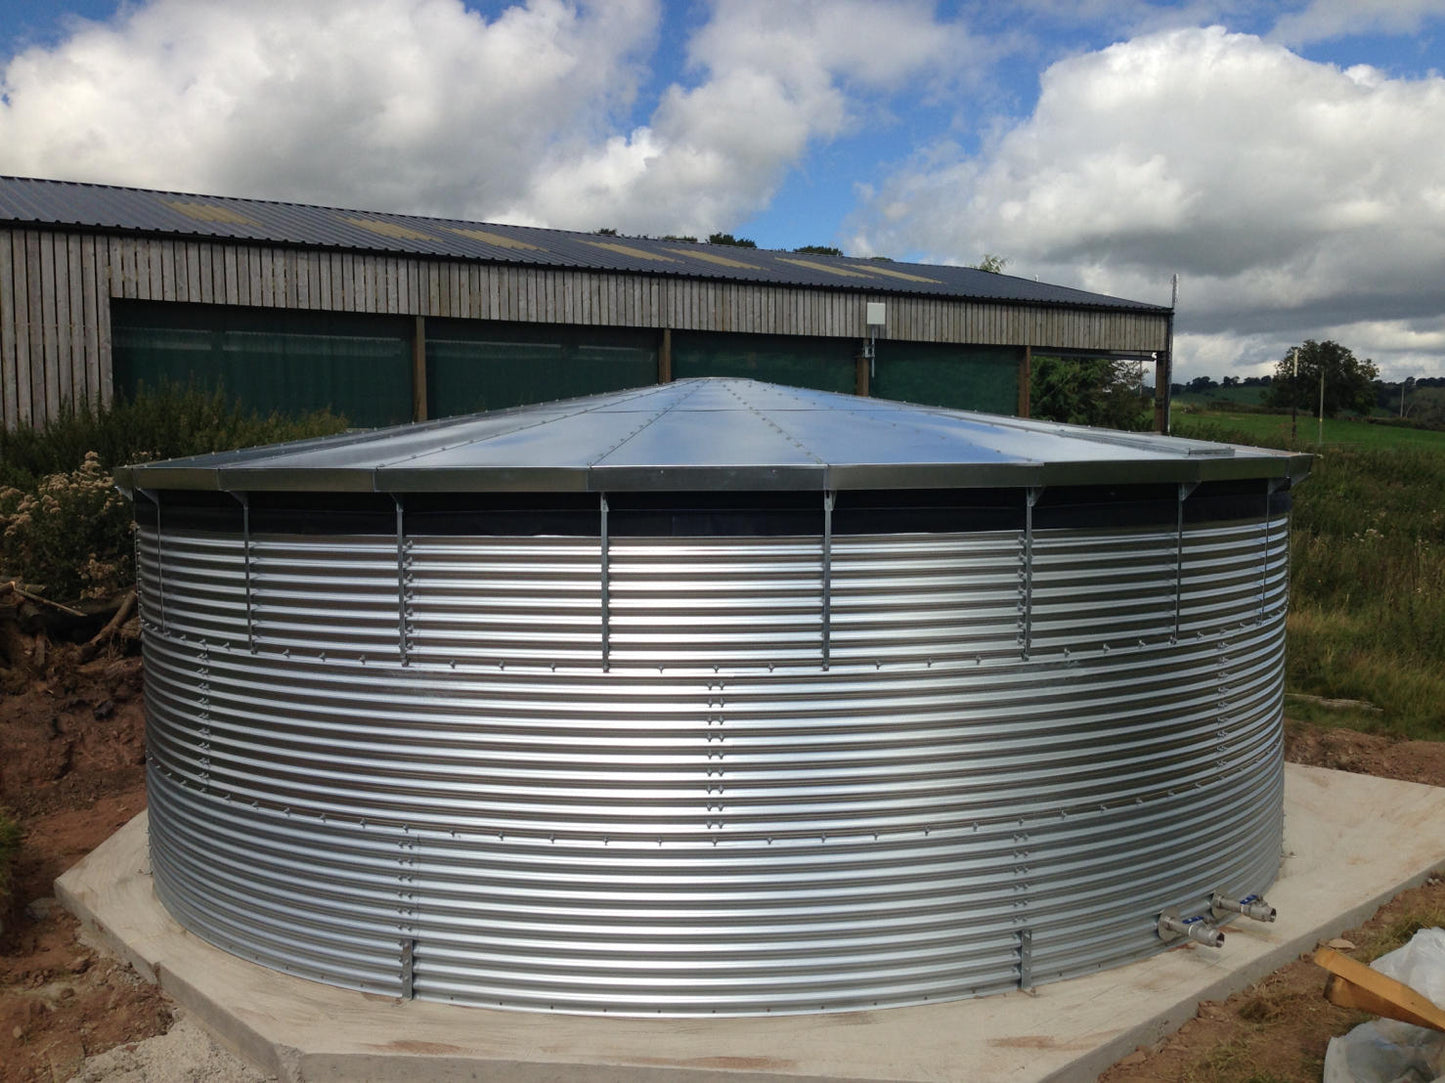 216,000 litre Galvanised Steel Water Tank